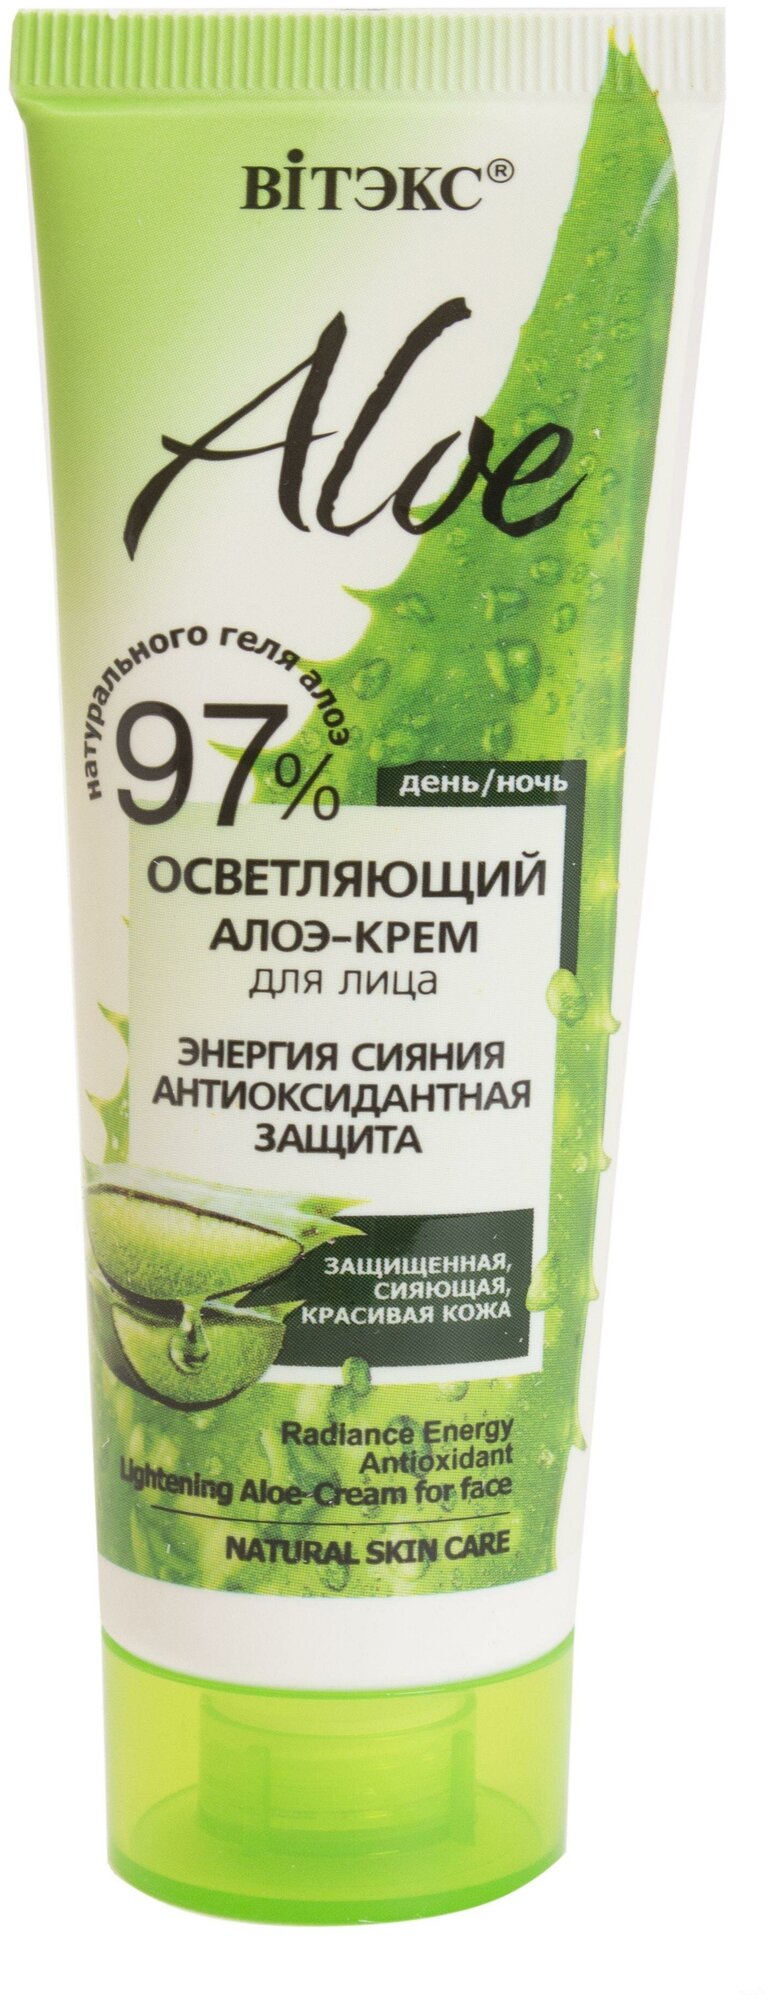 Витекс Aloe 97% Осветляющий алоэ-крем для лица «Энергия сияния. Антиоксидантная защита». 50мл